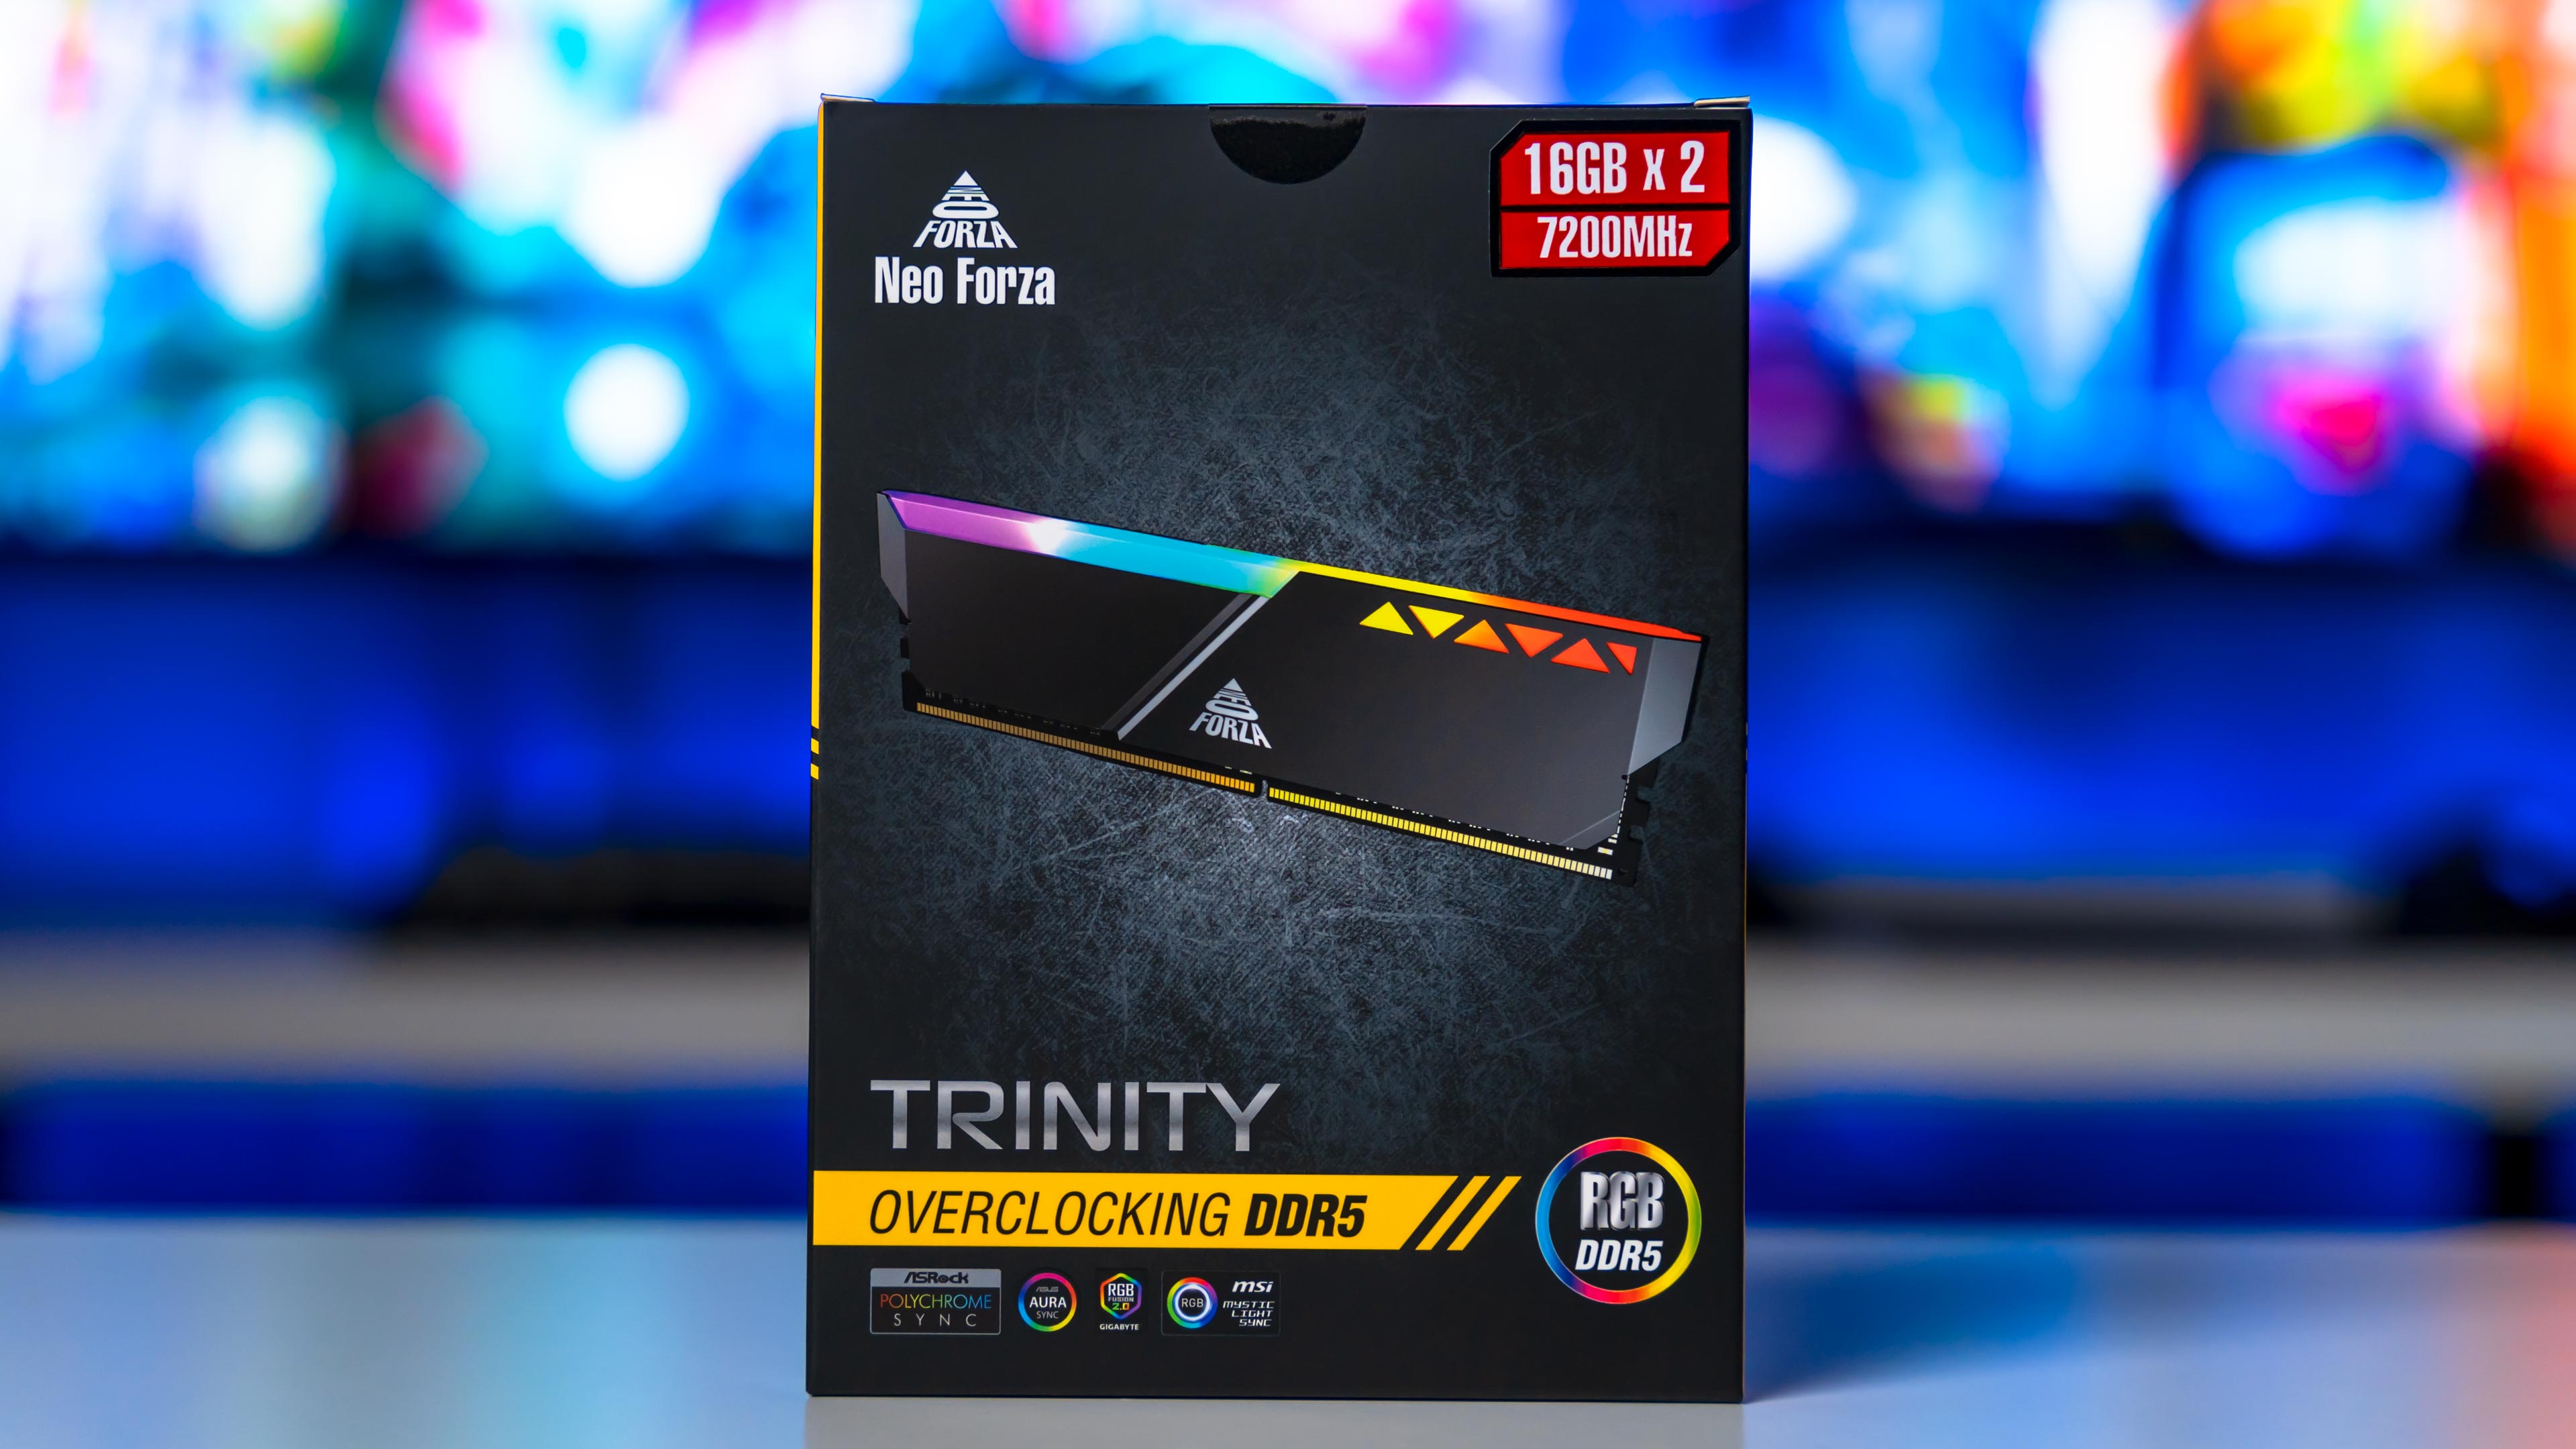 Neo Forza Trinity RGB DDR5 7200Mhz Box (1)